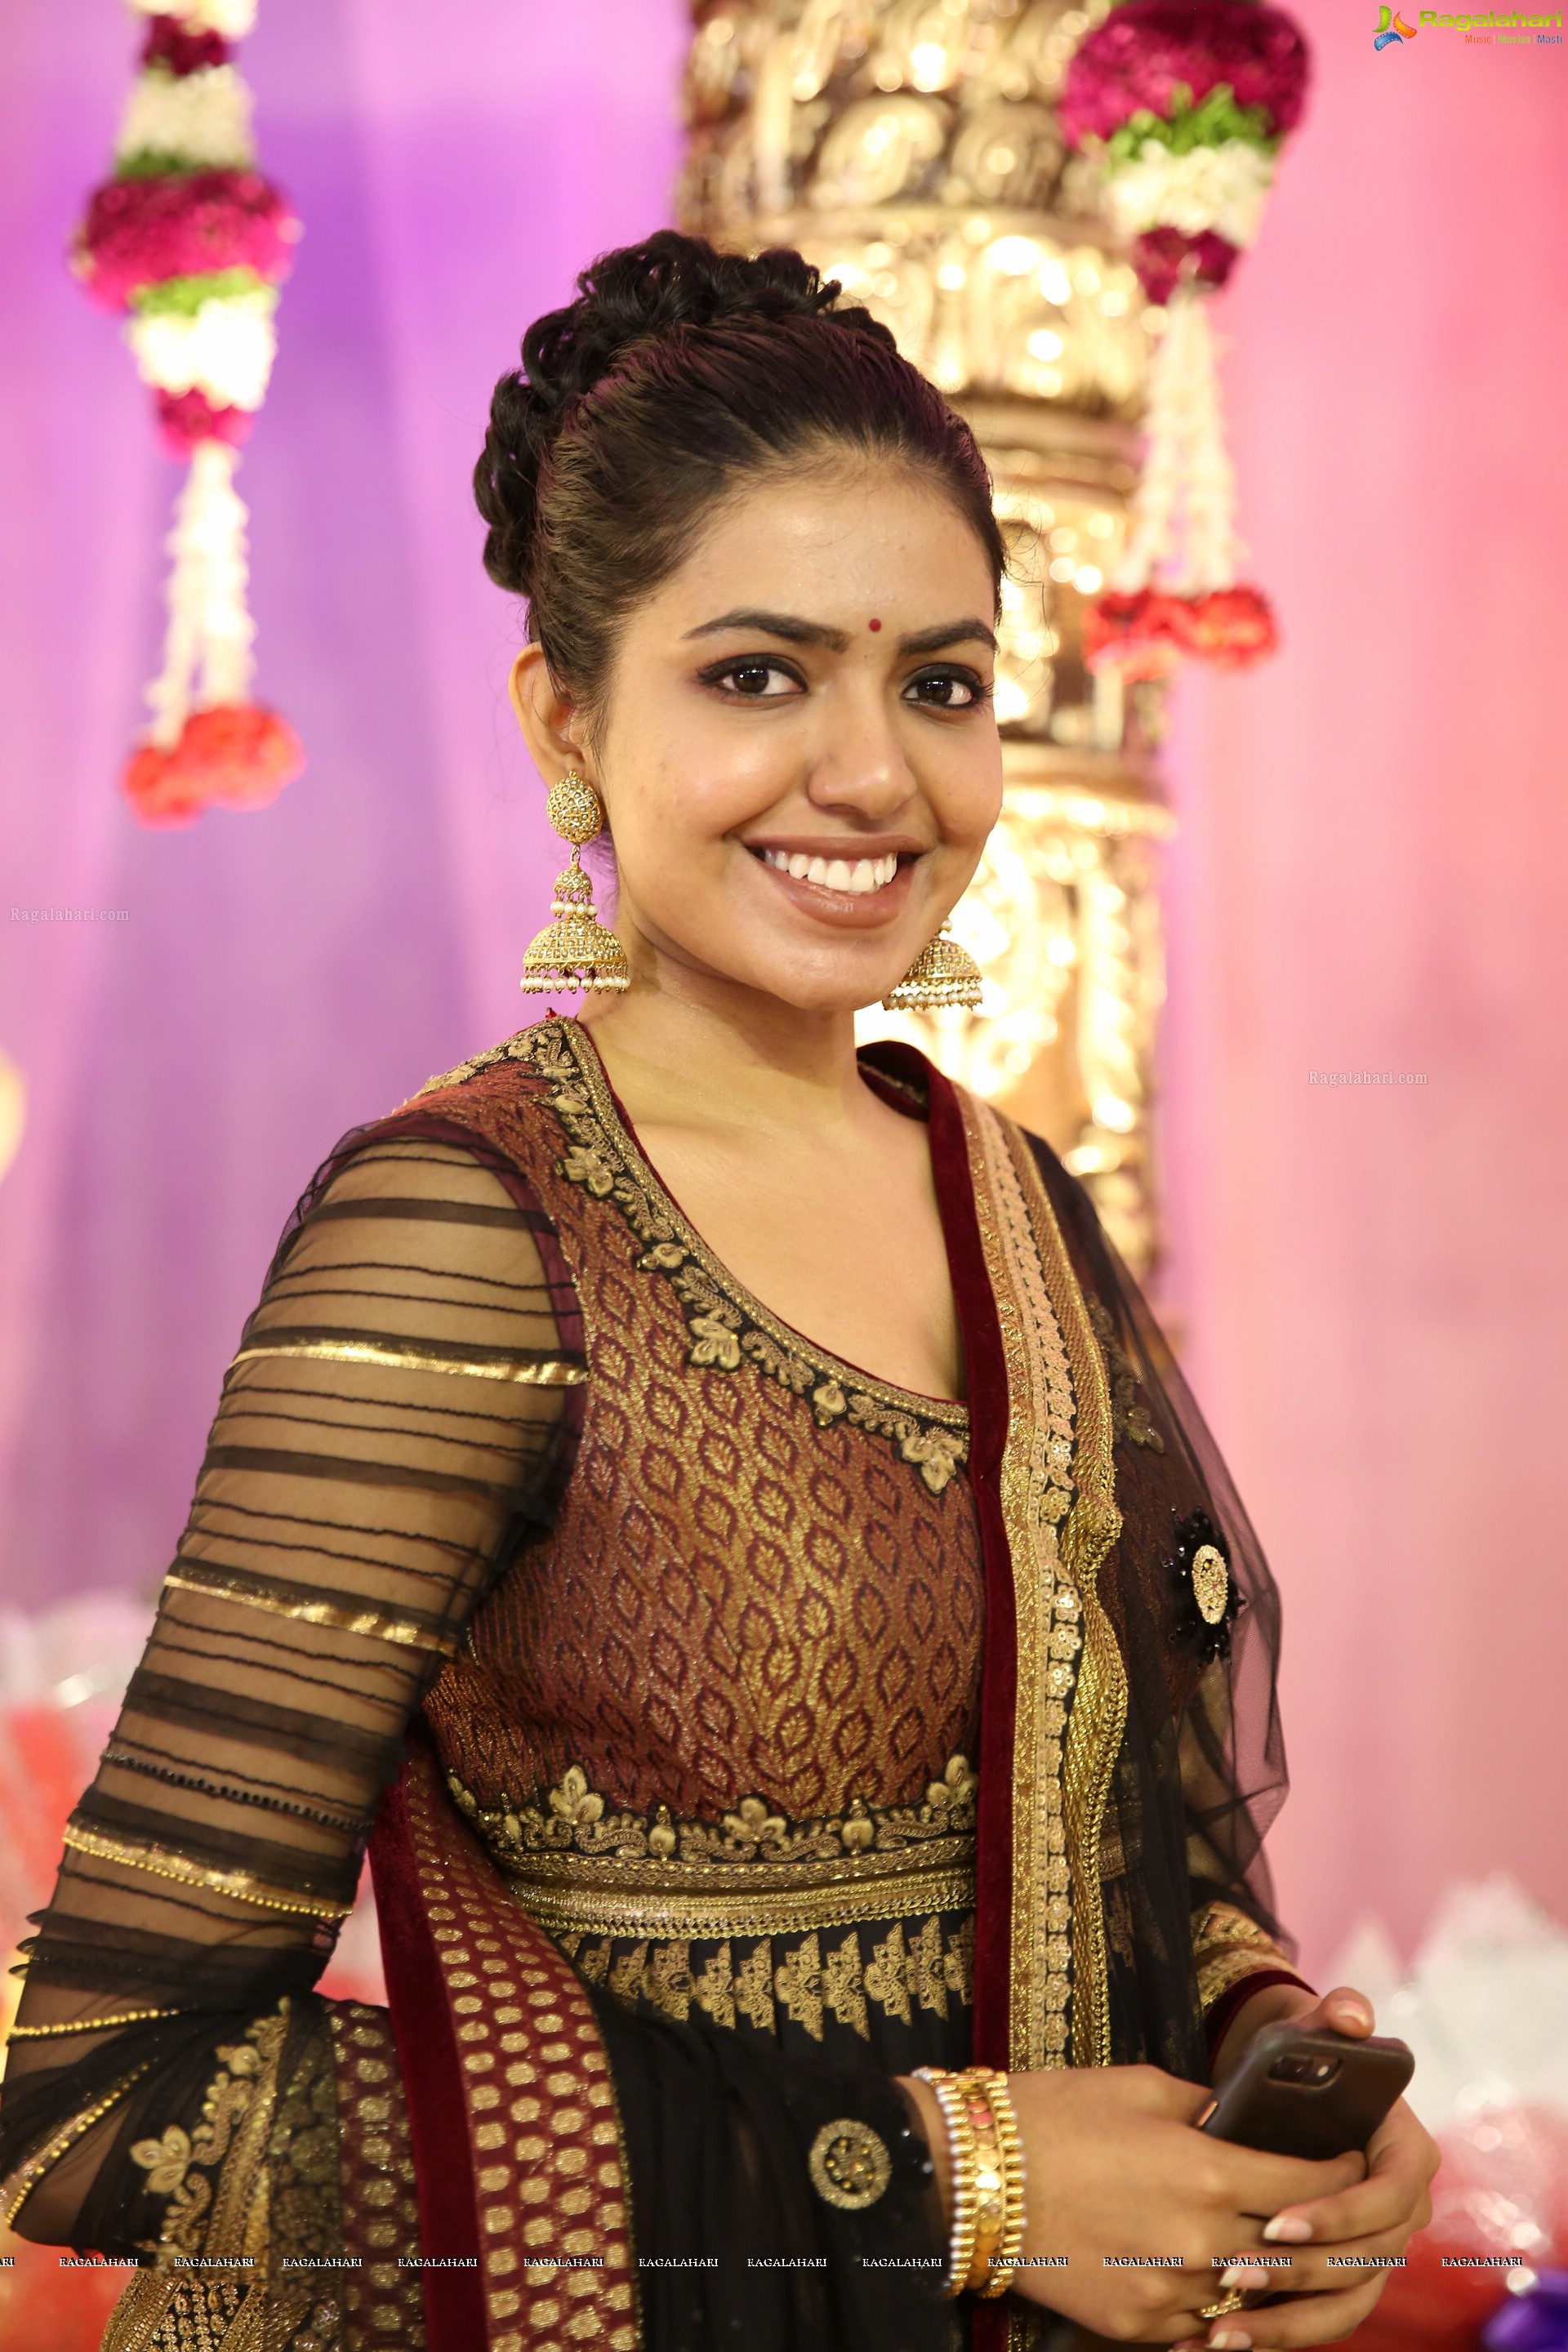 Shivani Rajasekhar at Ambica Vinayaka Surya Kumar-Preethika Lakshmi Wedding (High Definition Photos)